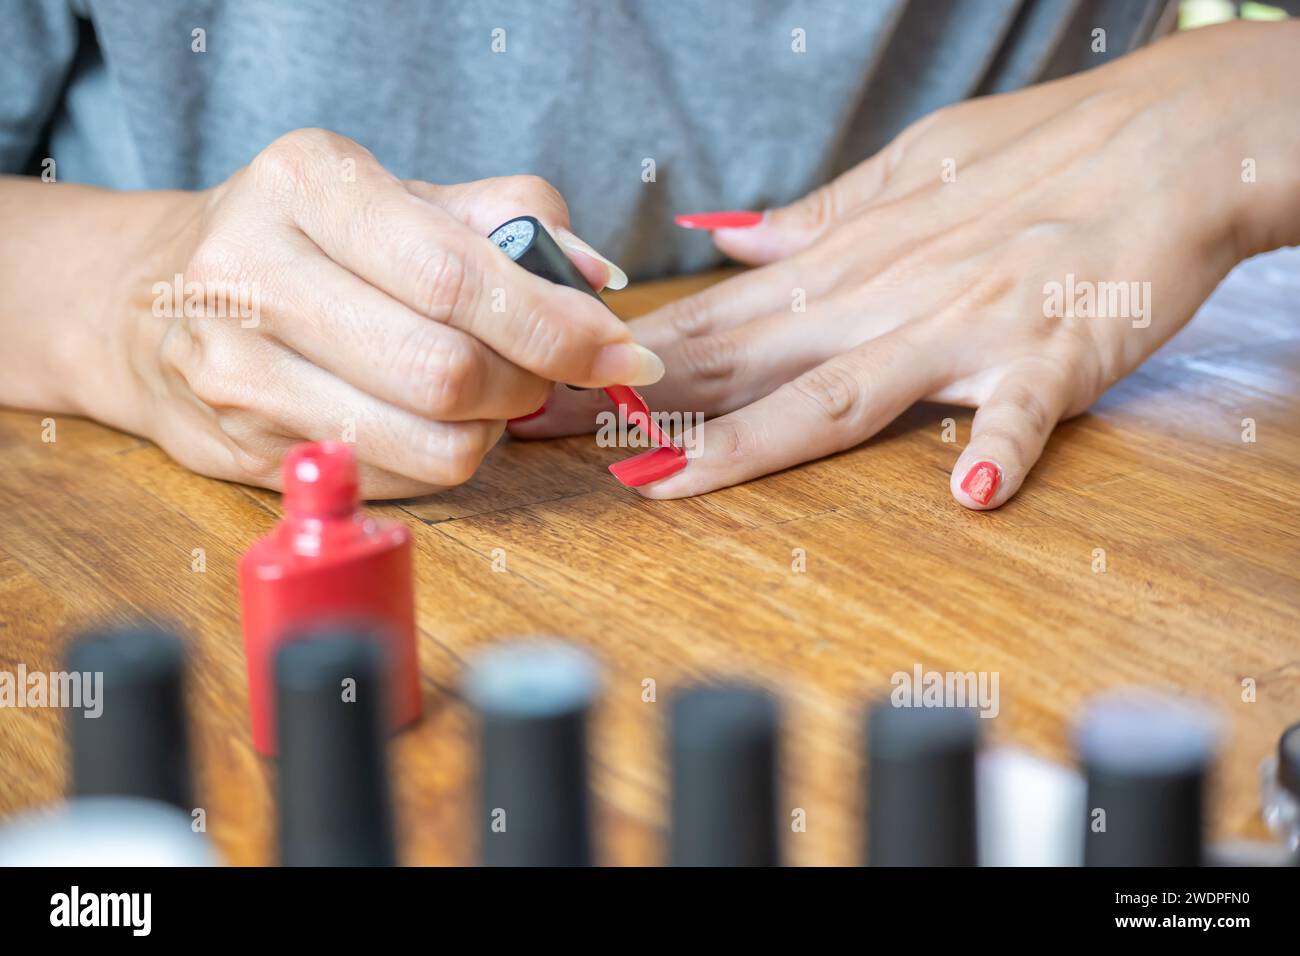 Mani di una giovane donna latina che dipinge le unghie con uno smalto rosso sul tavolo, circondata da accessori per la pittura. Foto Stock